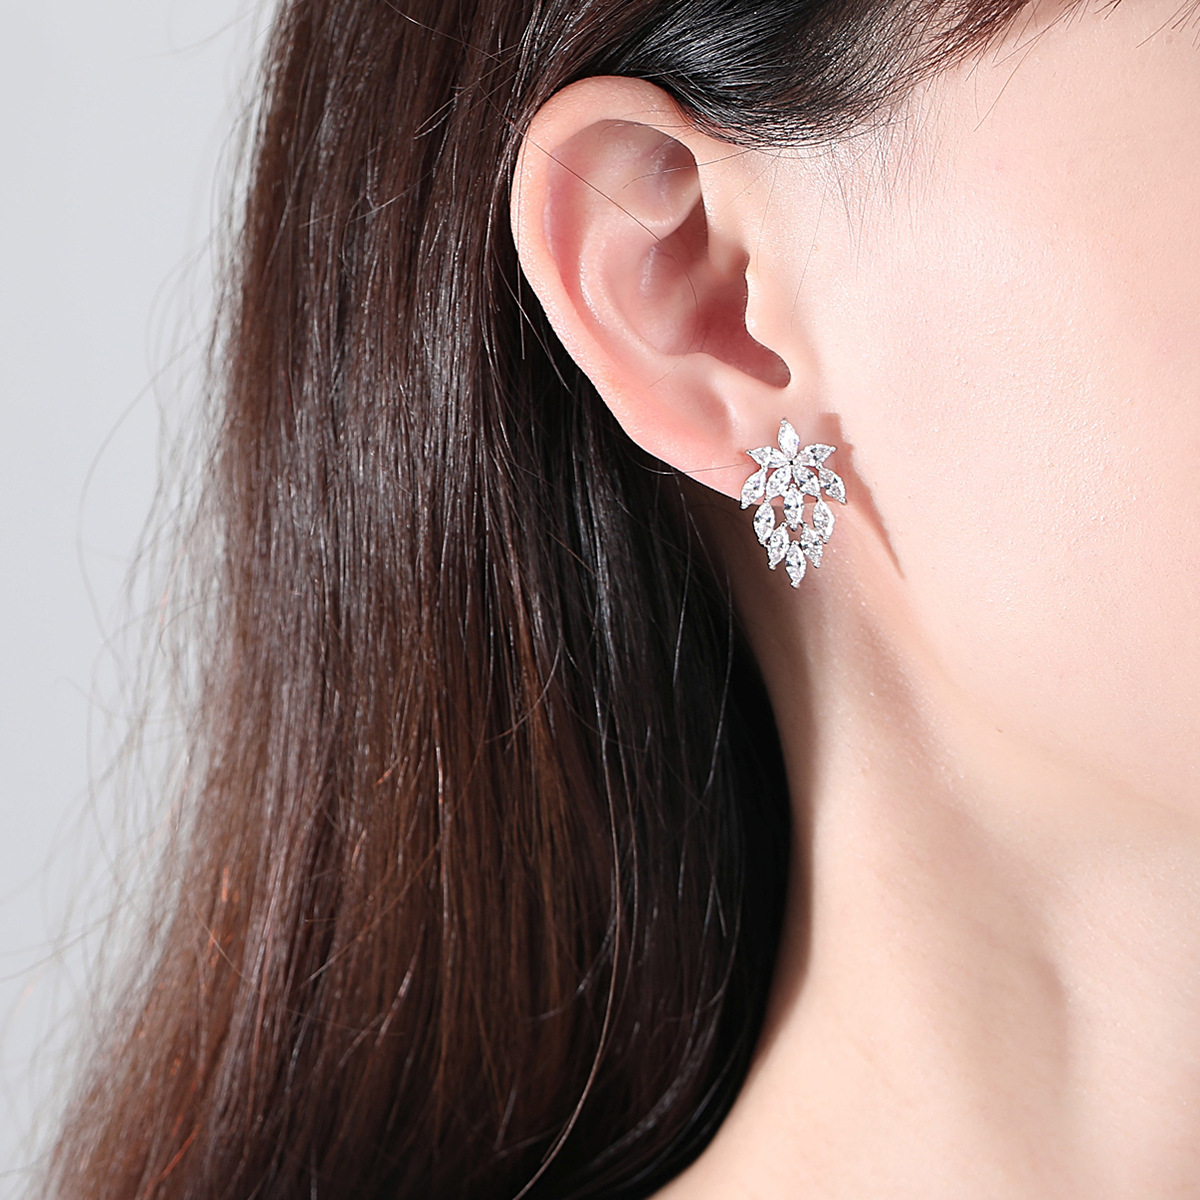 Leaves zircon earrings modeling creative stud earrings